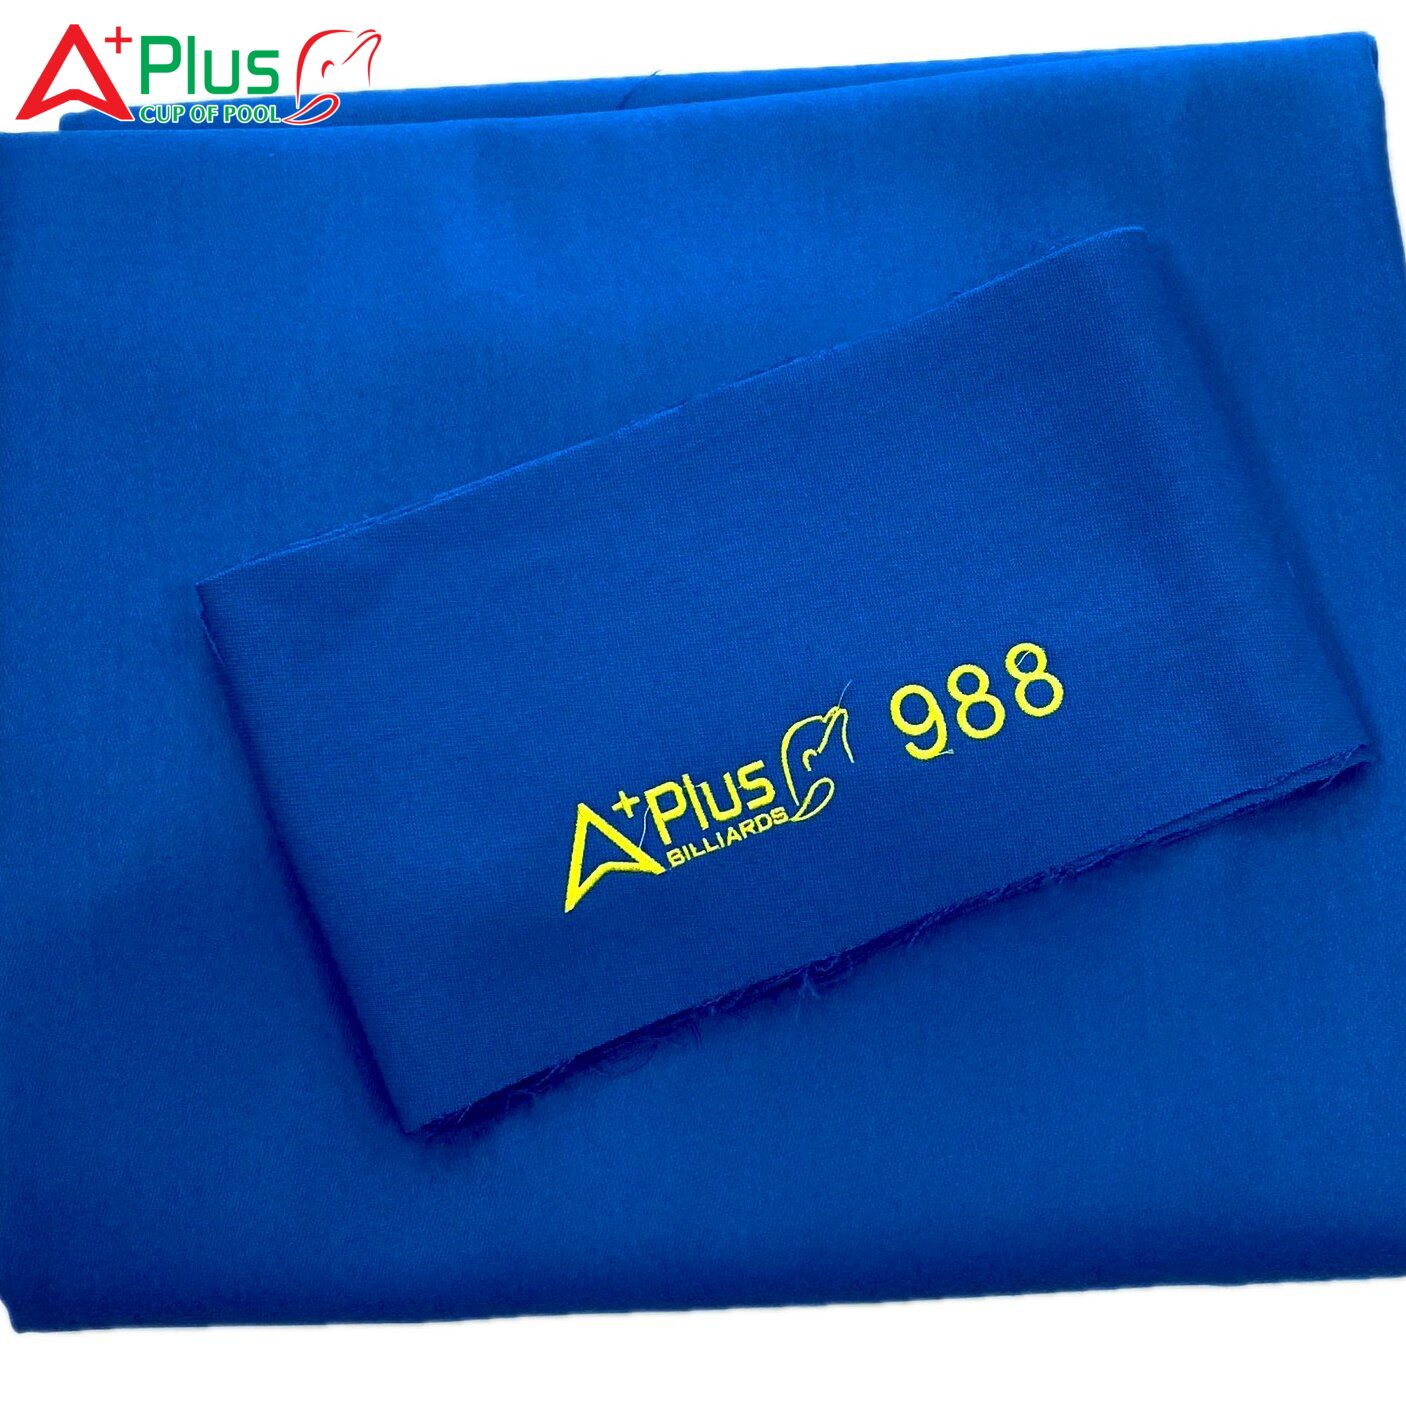 Aplus 988 Cloth